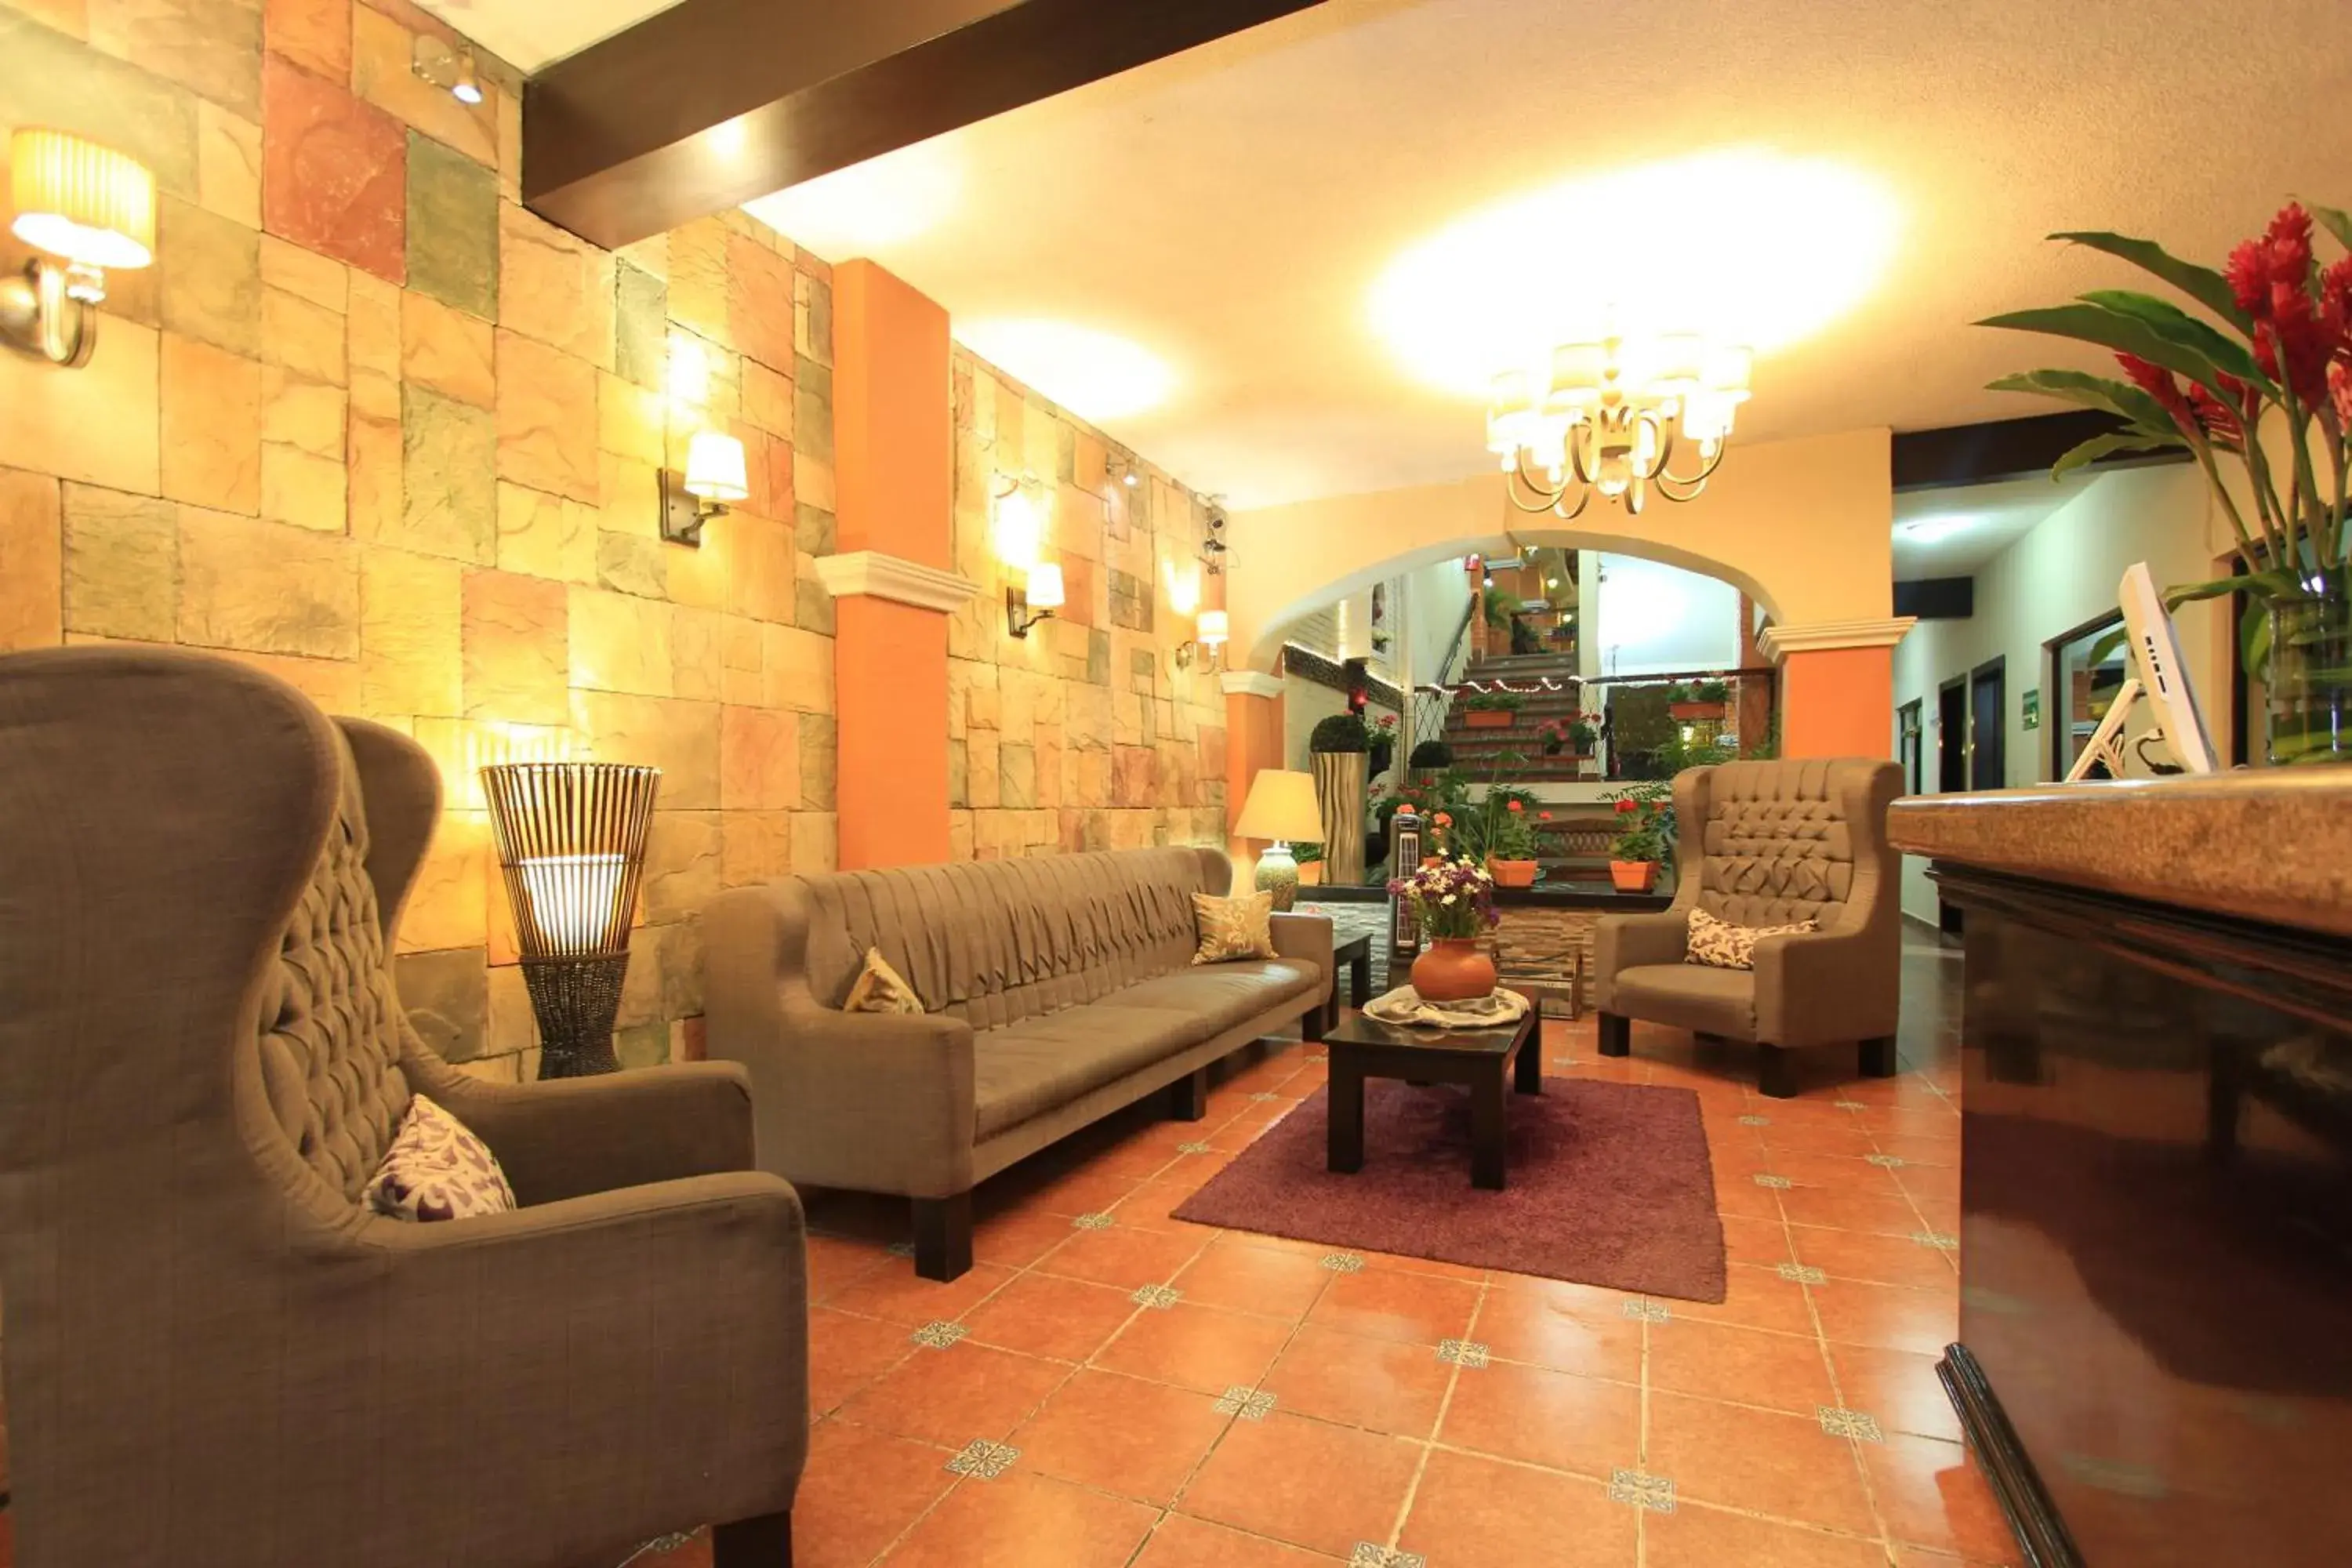 Lobby or reception, Lobby/Reception in Hotel del Carmen